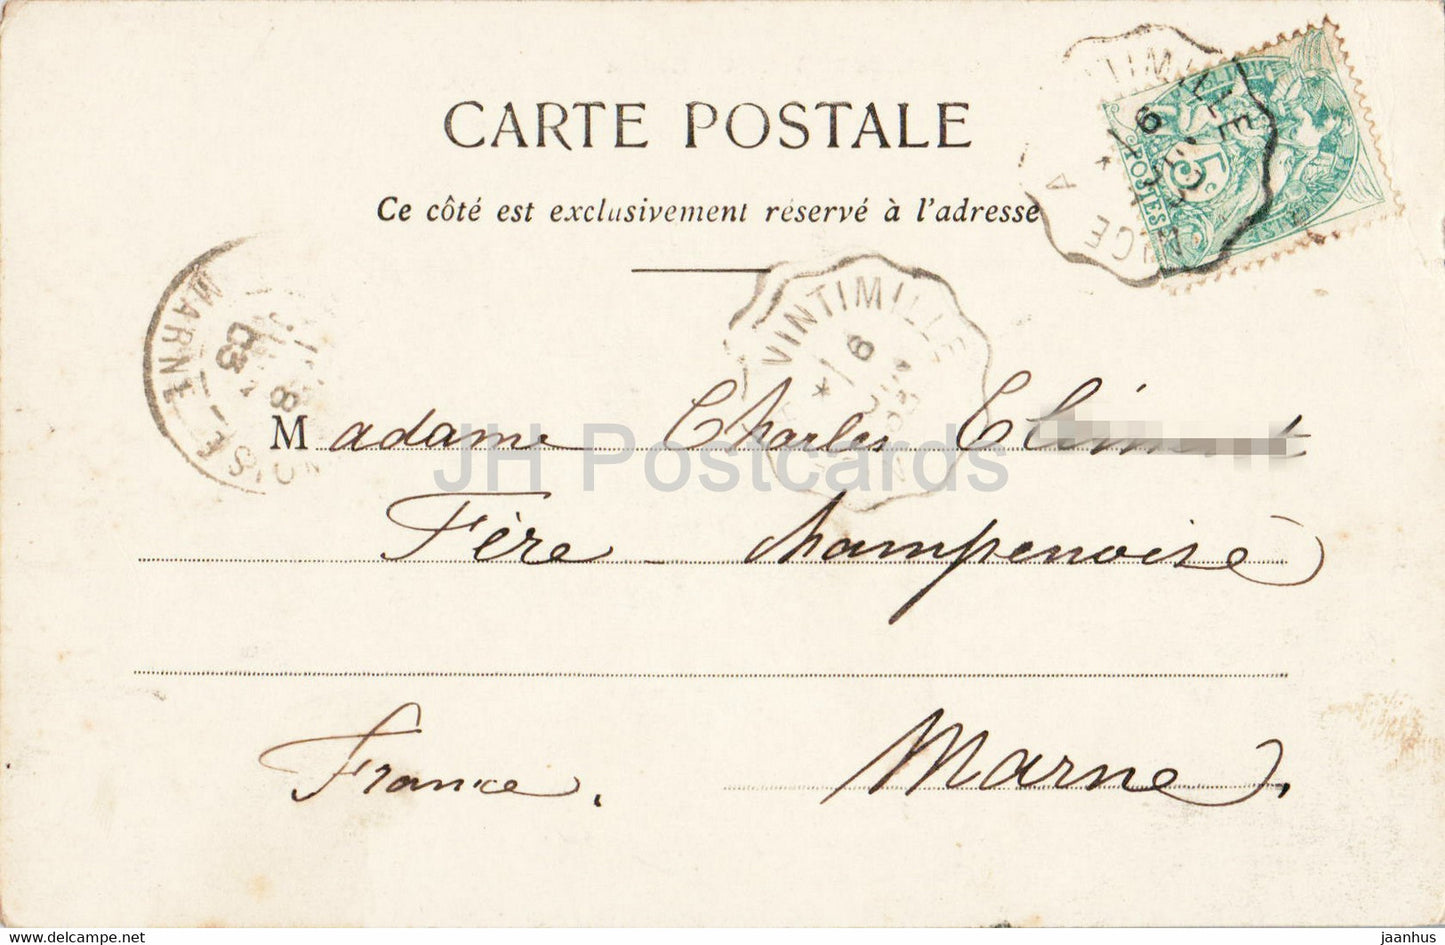 Monaco - Palais du Prince et Tête de Chien - 539 - carte postale ancienne - 1903 - Monaco - occasion